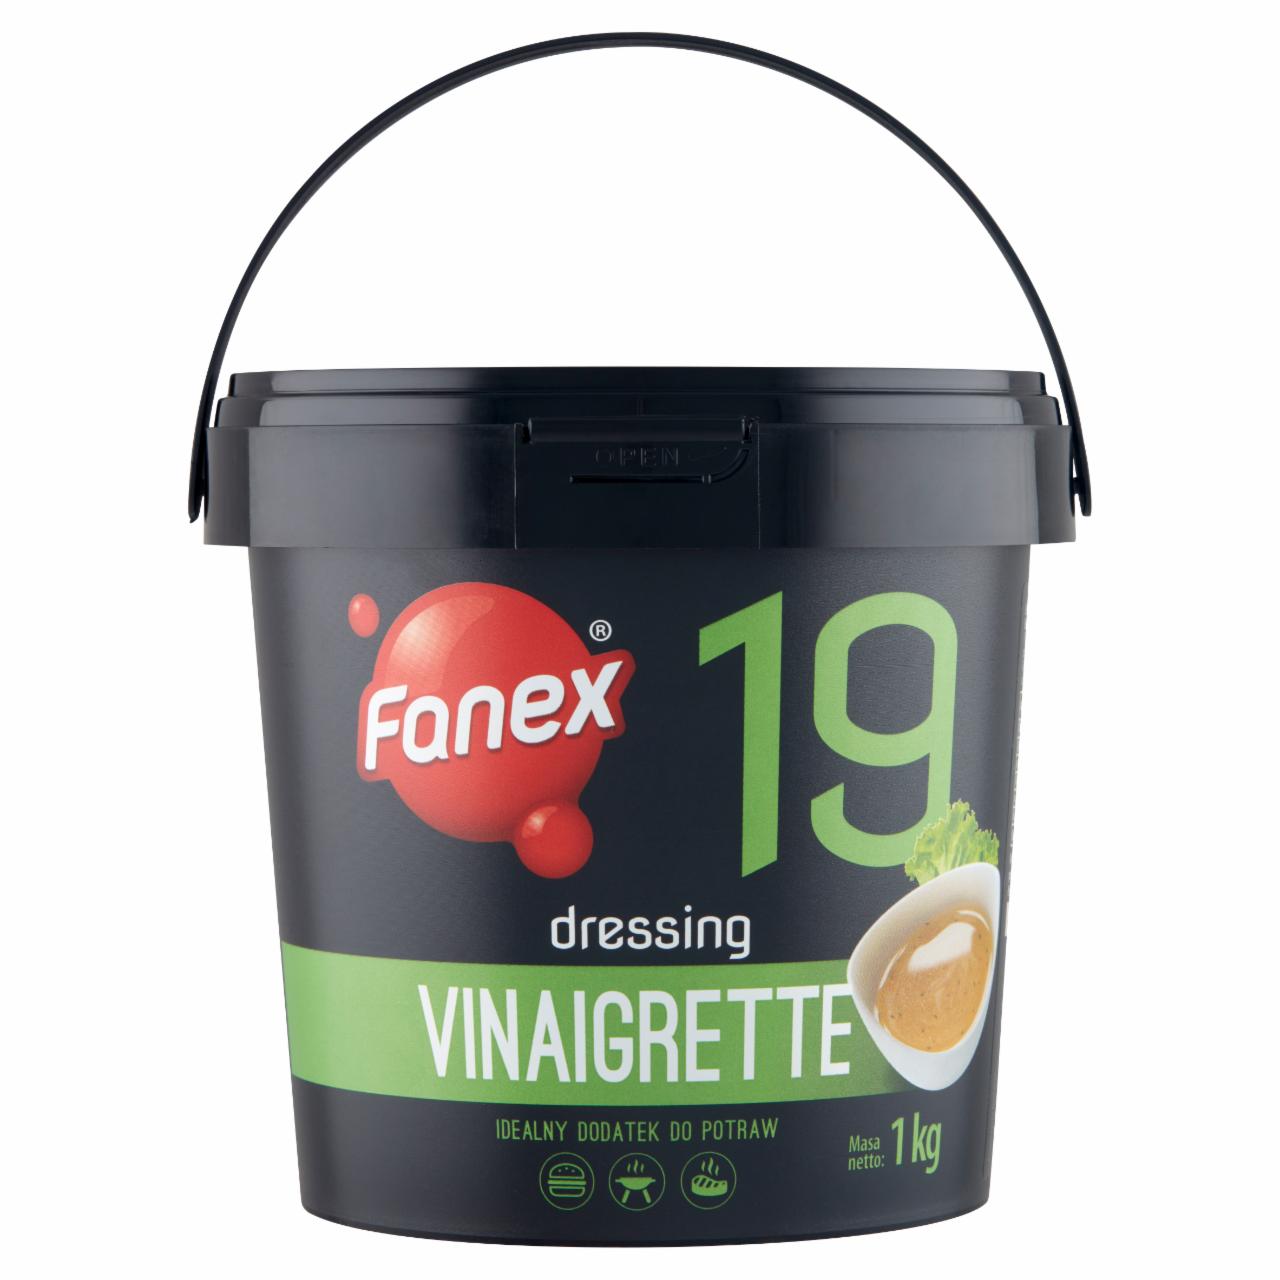 Zdjęcia - Fanex Dressing vinaigrette 1 kg